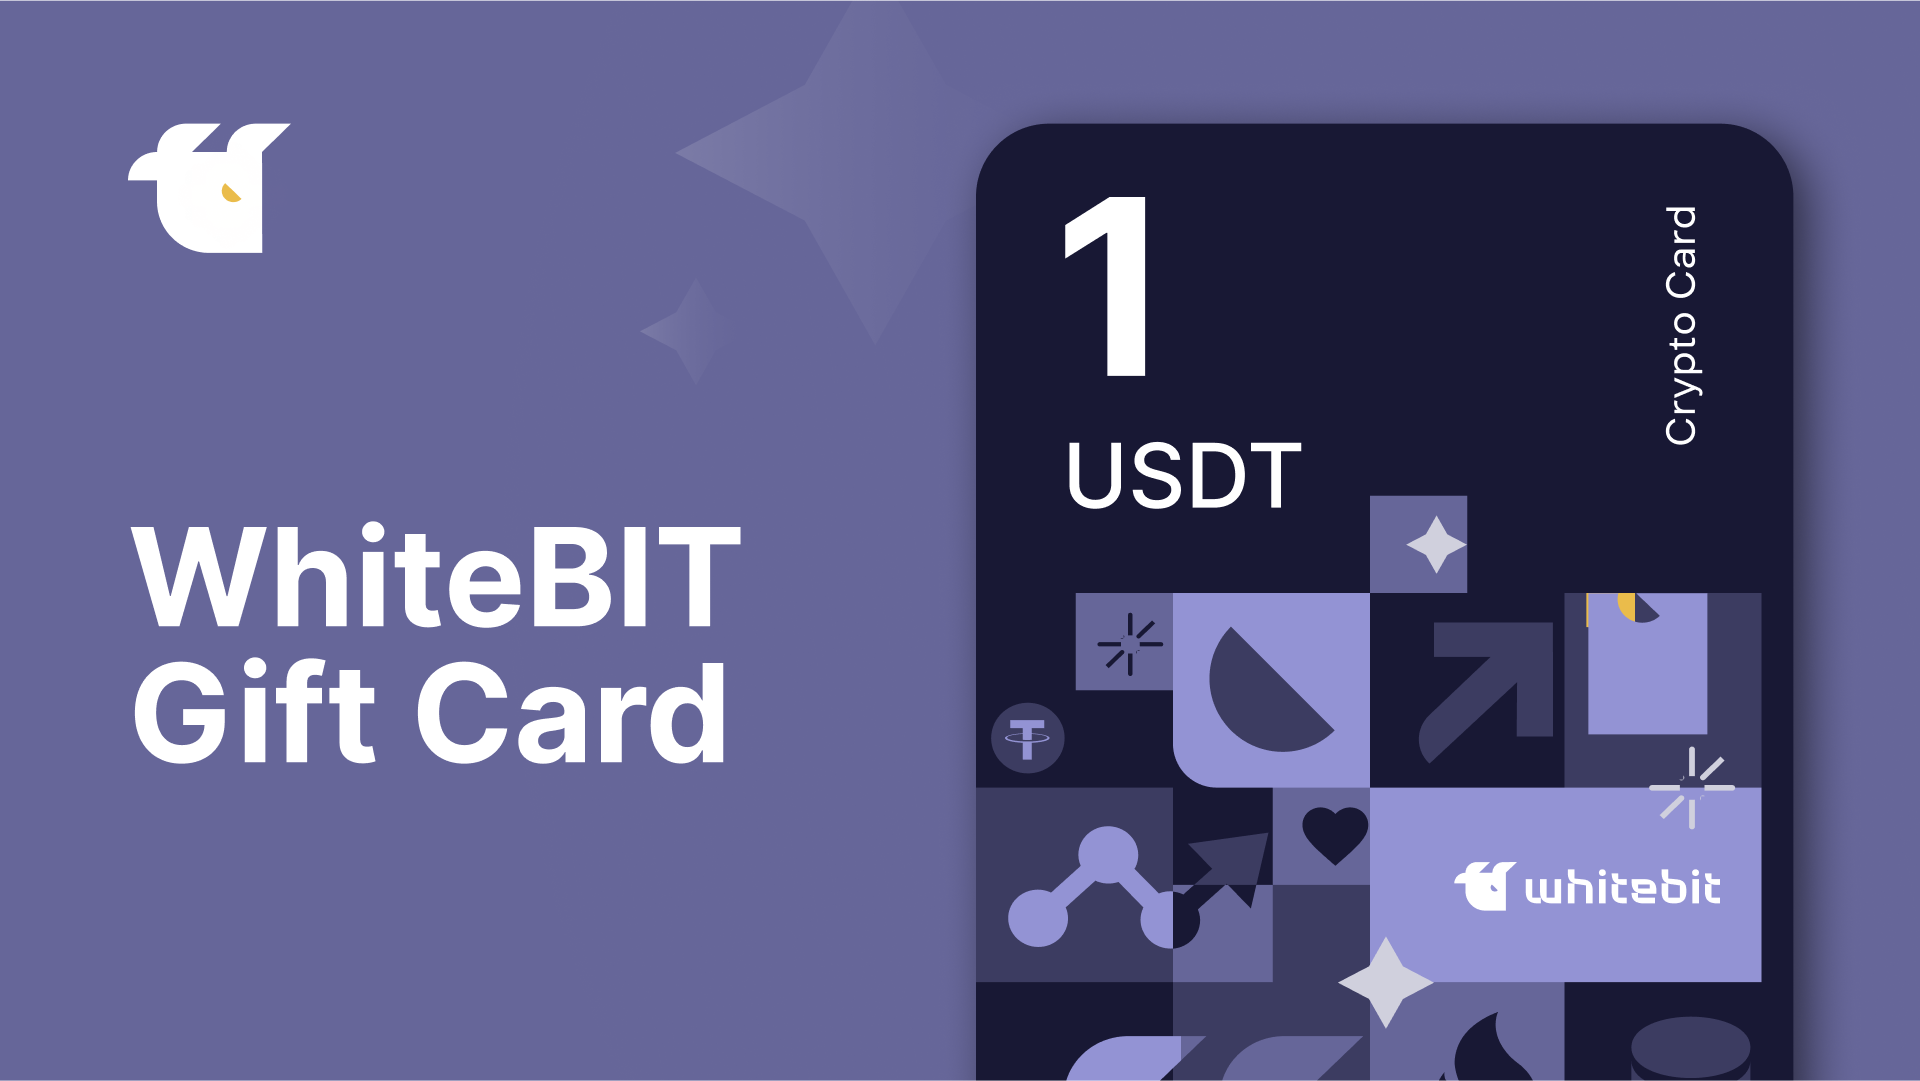 WhiteBIT 1 USDT Gift Card 1.33 USD